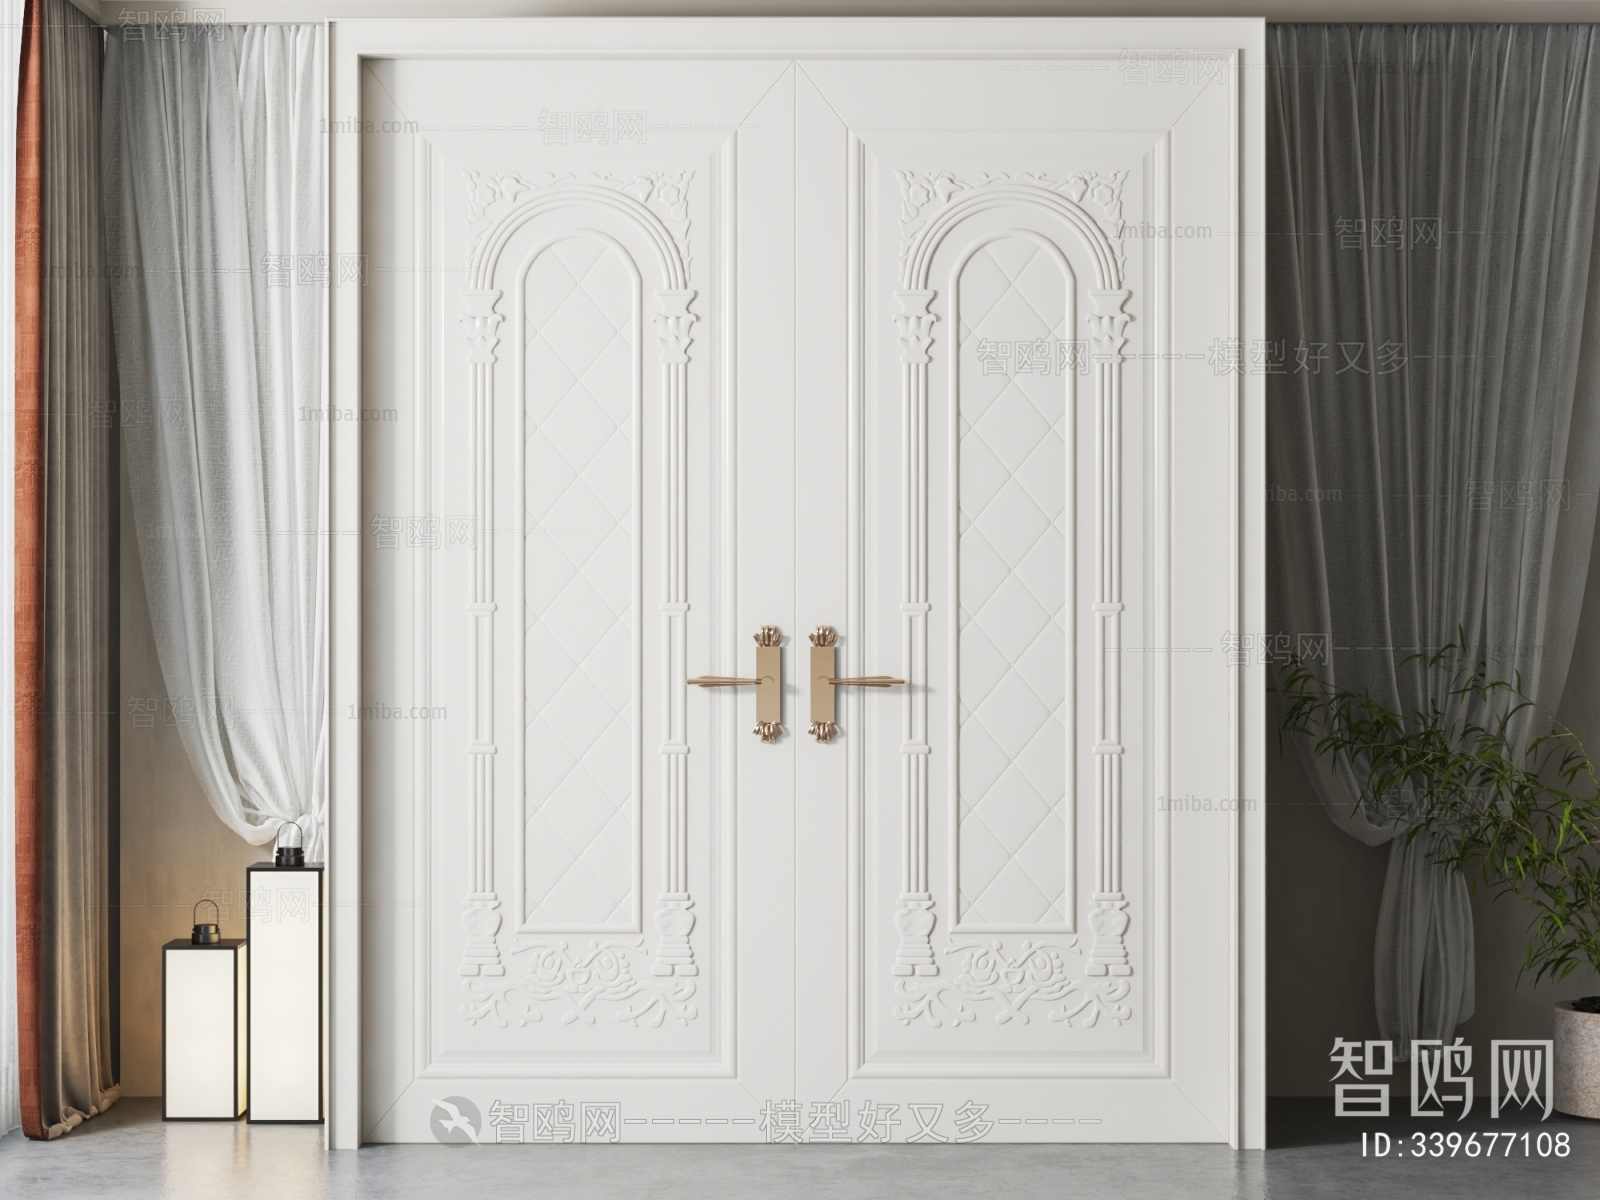 Simple European Style Double Door